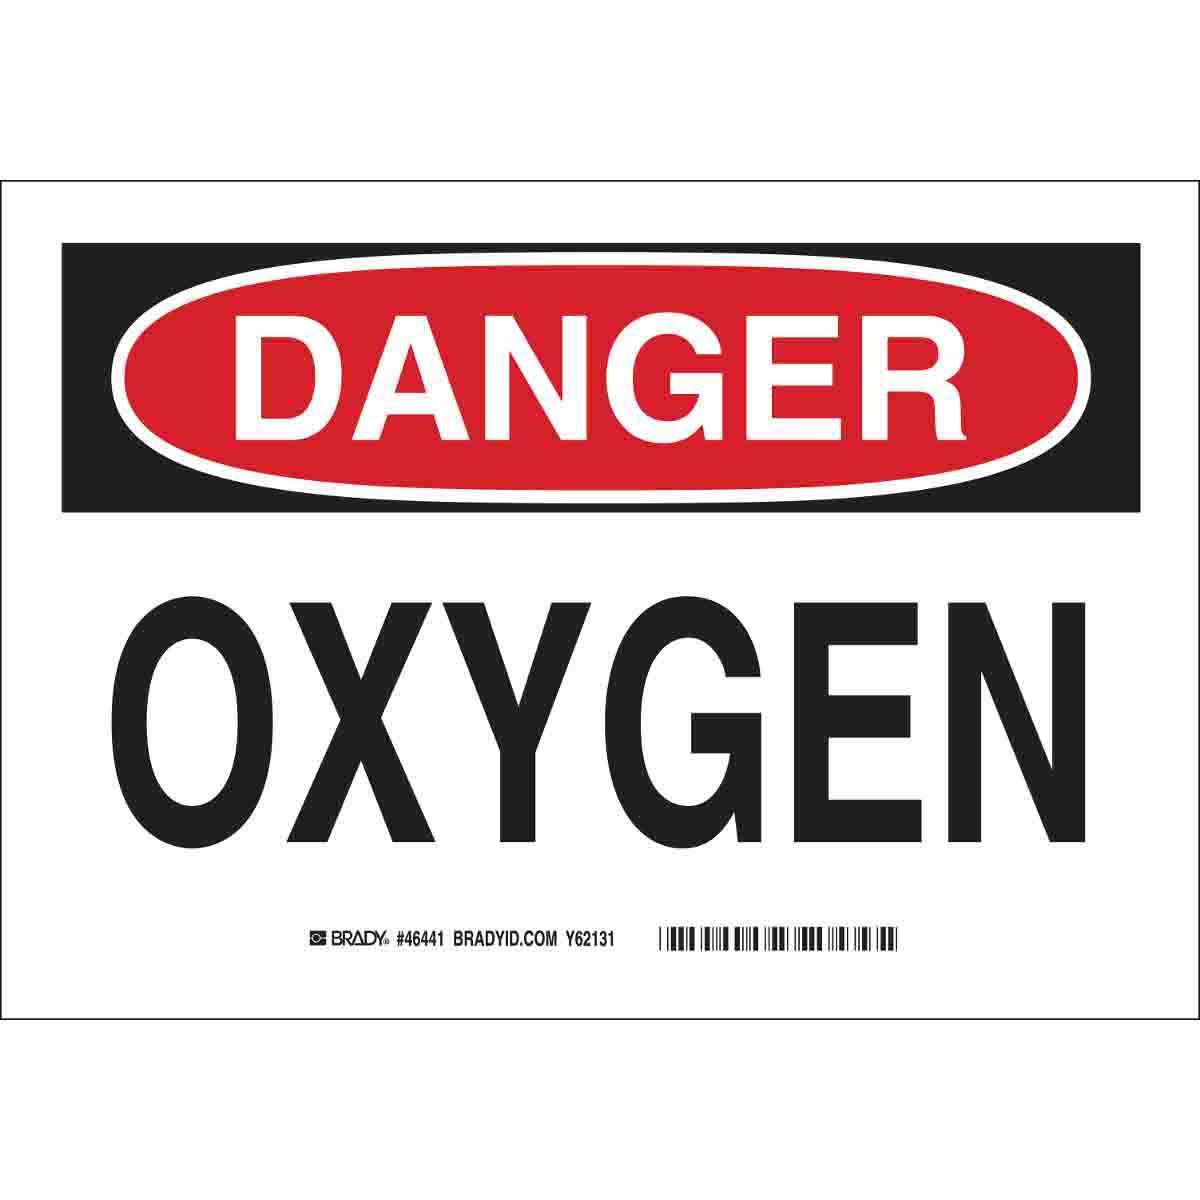 Oxygen Brady 46441 Aluminum 7 X 10 Danger Sign Legend 